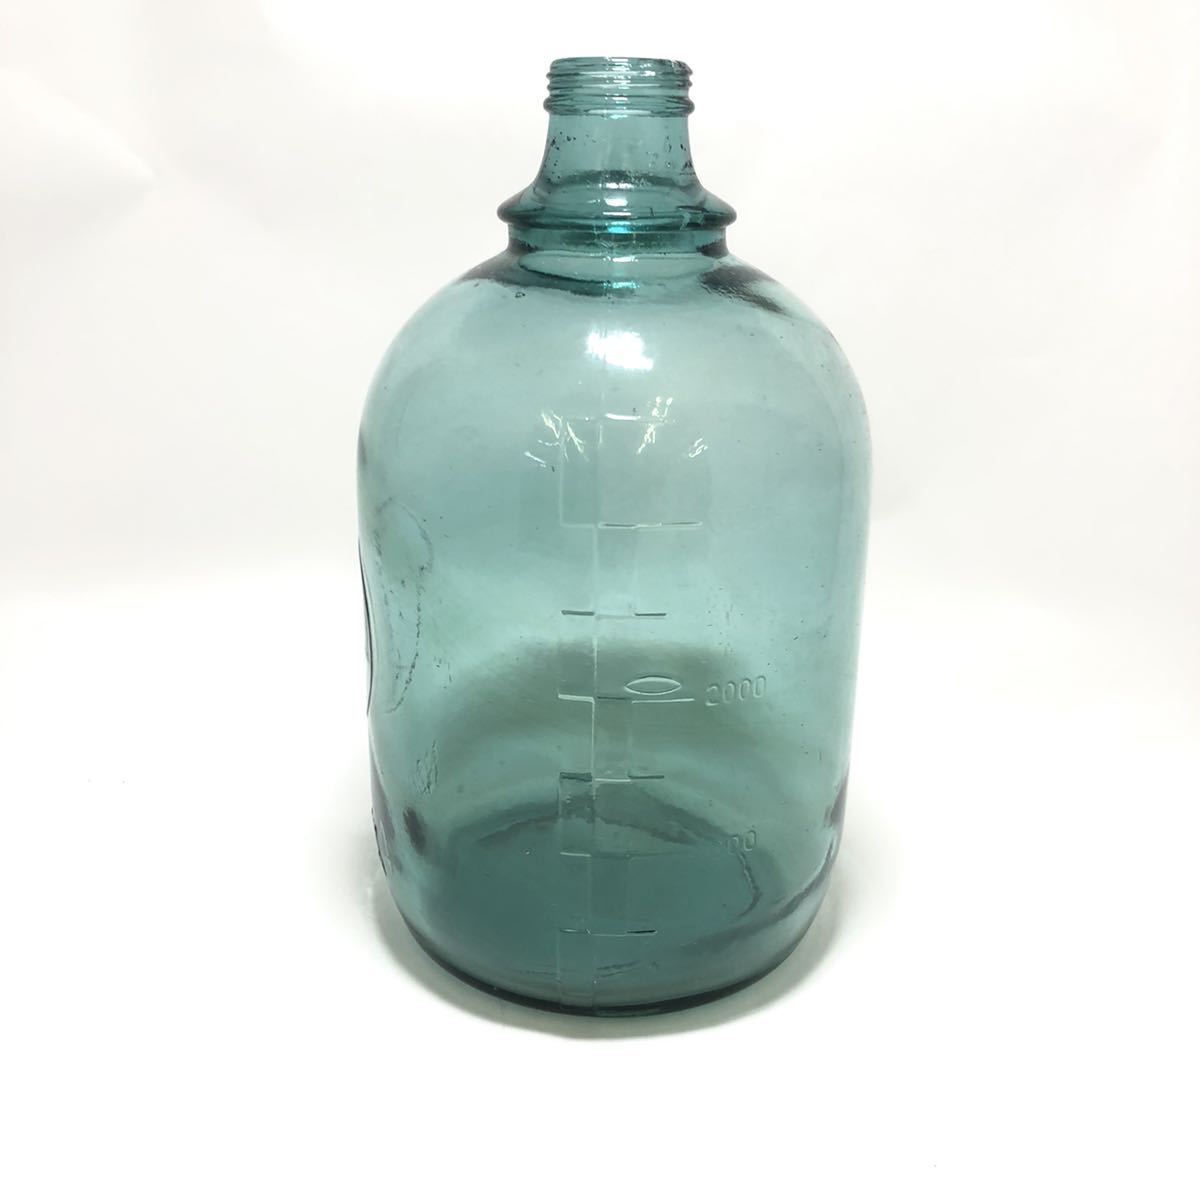 大きいアンティークボトル 塔印 Naniwa レトロ瓶 青緑瓶 ガラス 売買されたオークション情報 Yahooの商品情報をアーカイブ公開 オークファン Aucfan Com